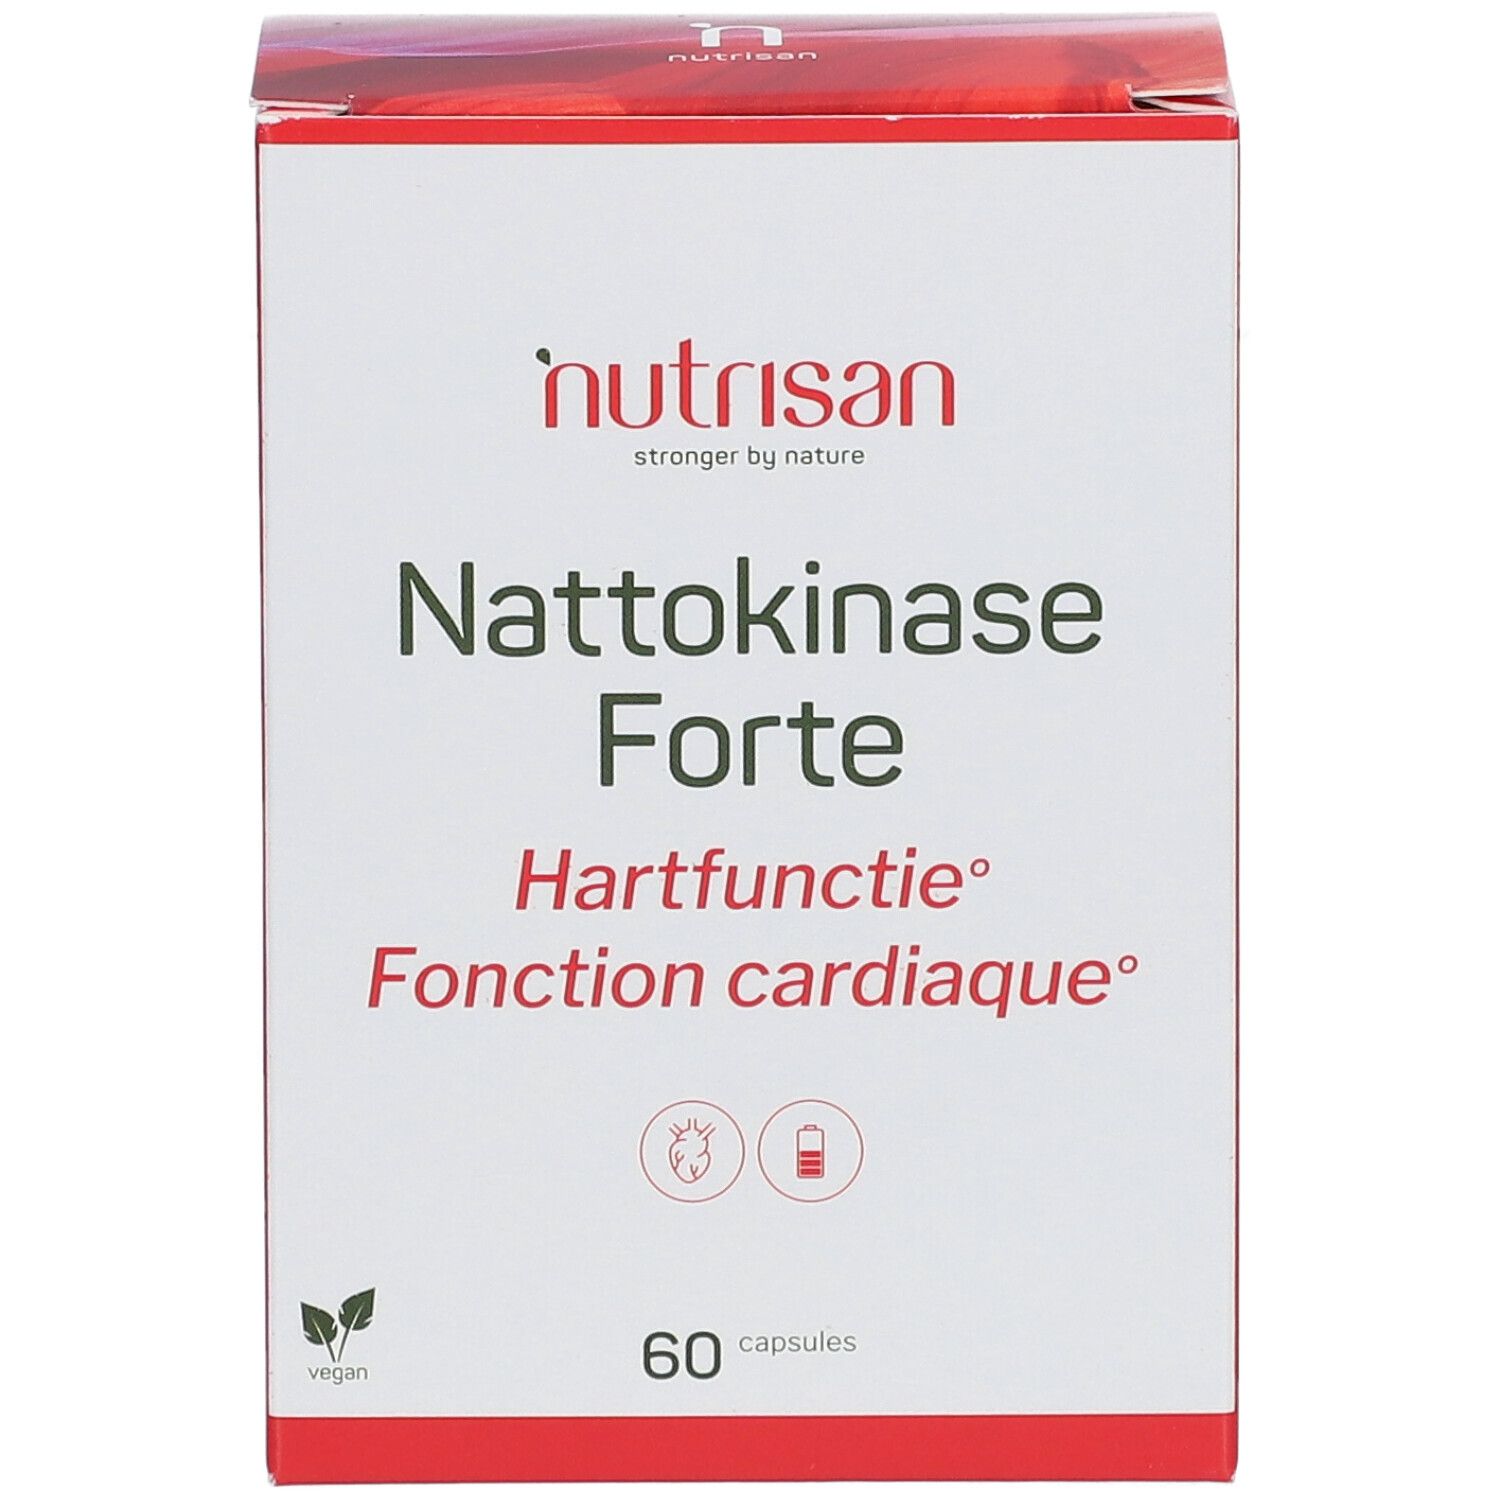 Nutrisan NattoKinase Forte